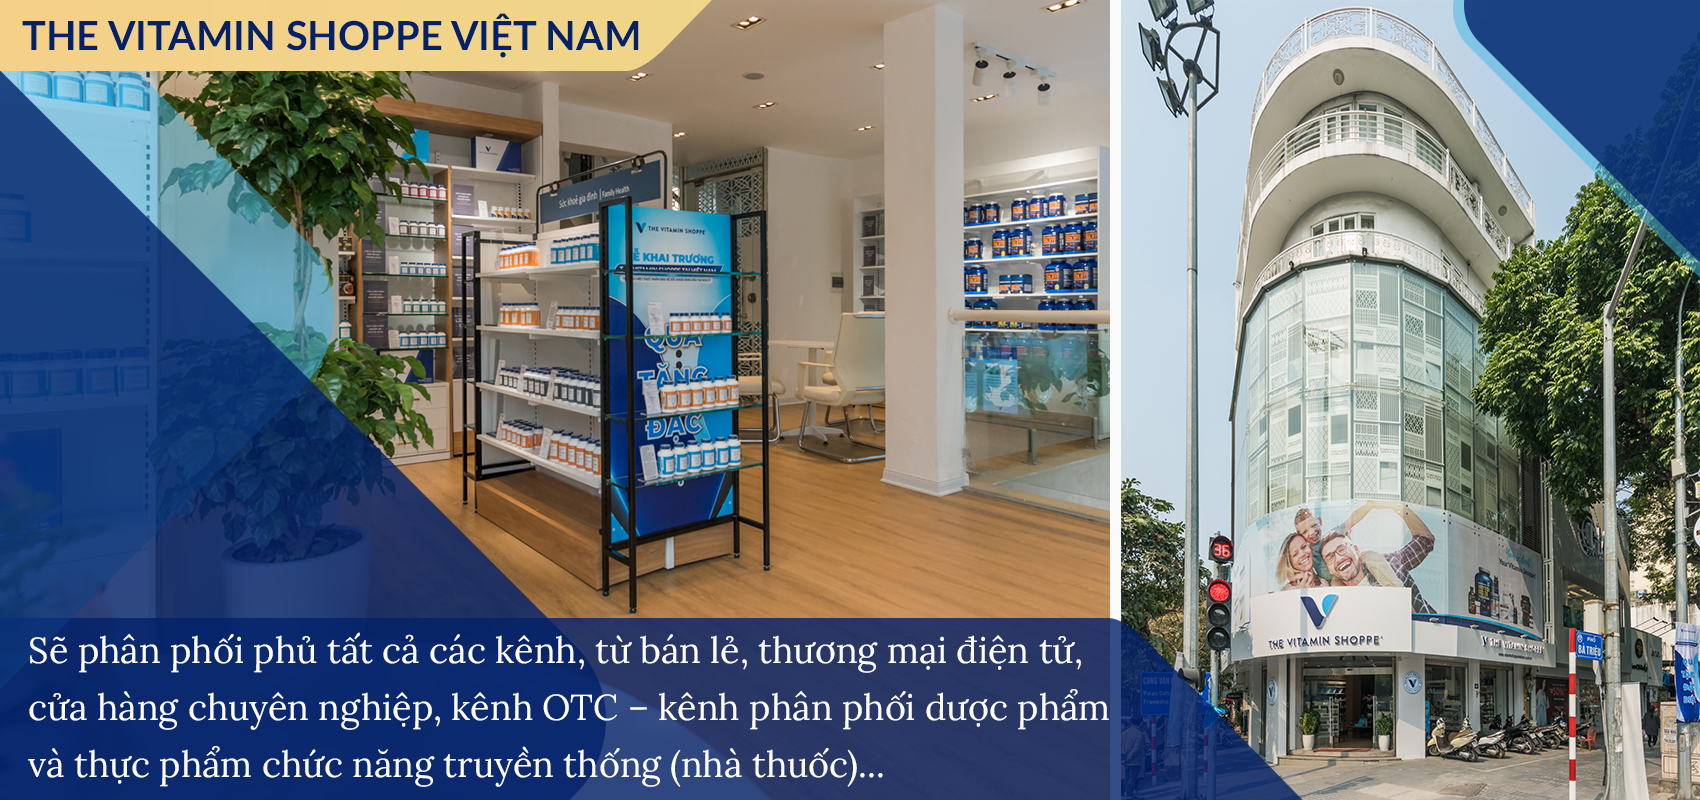 Hoàng Anh - CEO của The Vitamin Shoppe Việt Nam vàtham vọng đưa đến “phiên bản tốt nhất” về sức khỏe chongười tiêu dùng Việt - Ảnh 9.